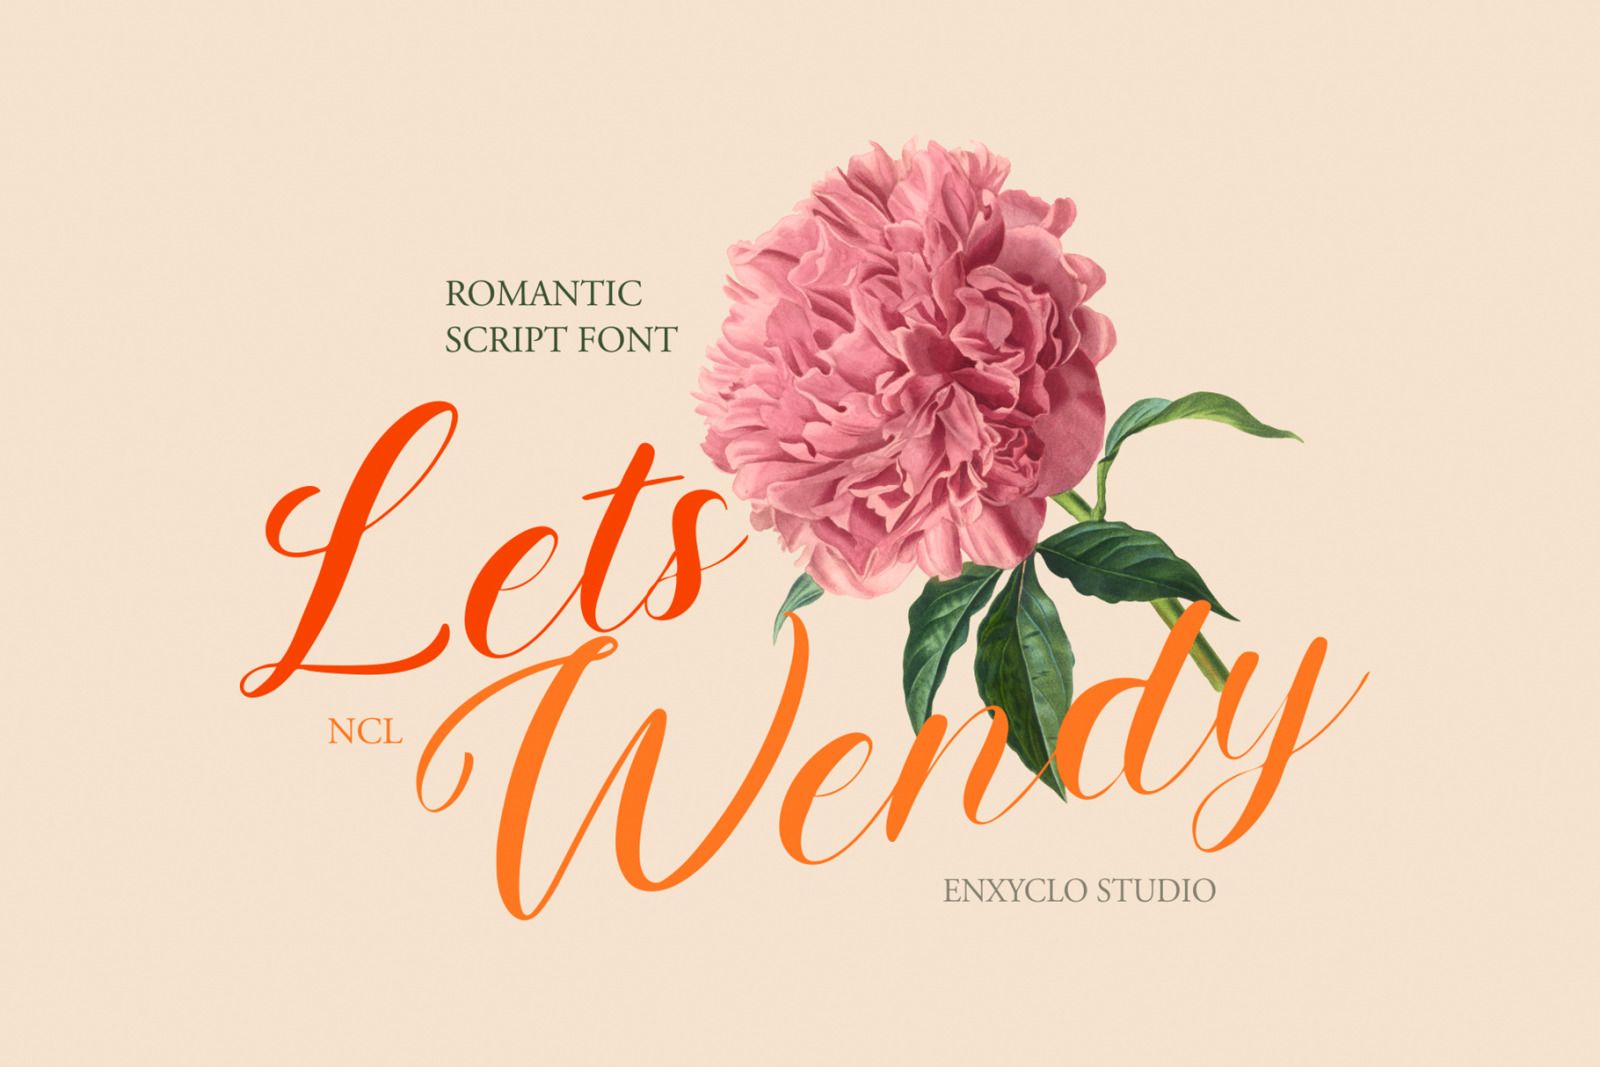 A romantic script font